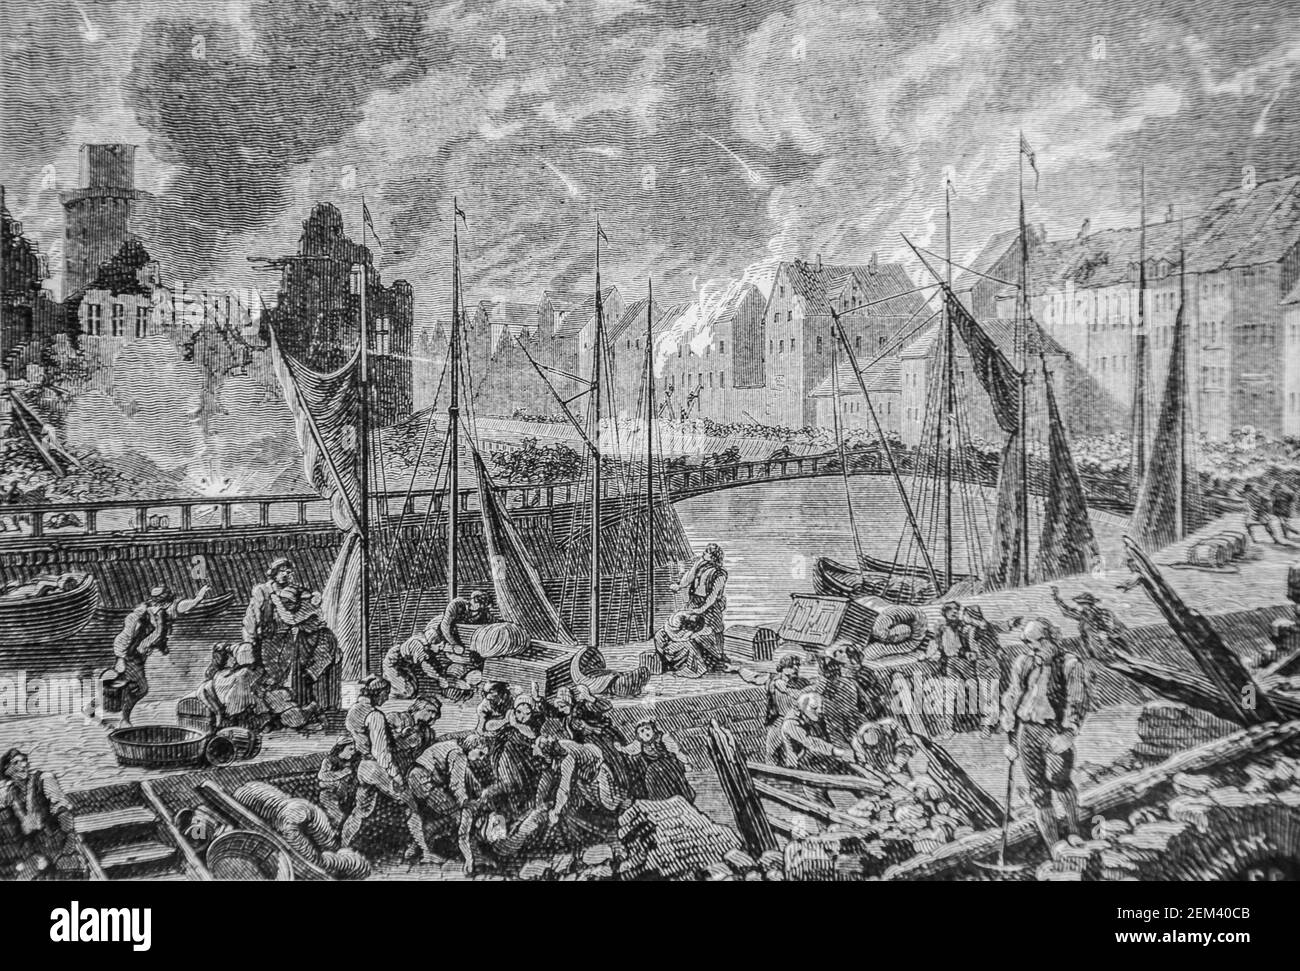 bombardement de copenhague, 1804-1832 histoire de france par henri martin ,editeur furne 1880 Foto Stock